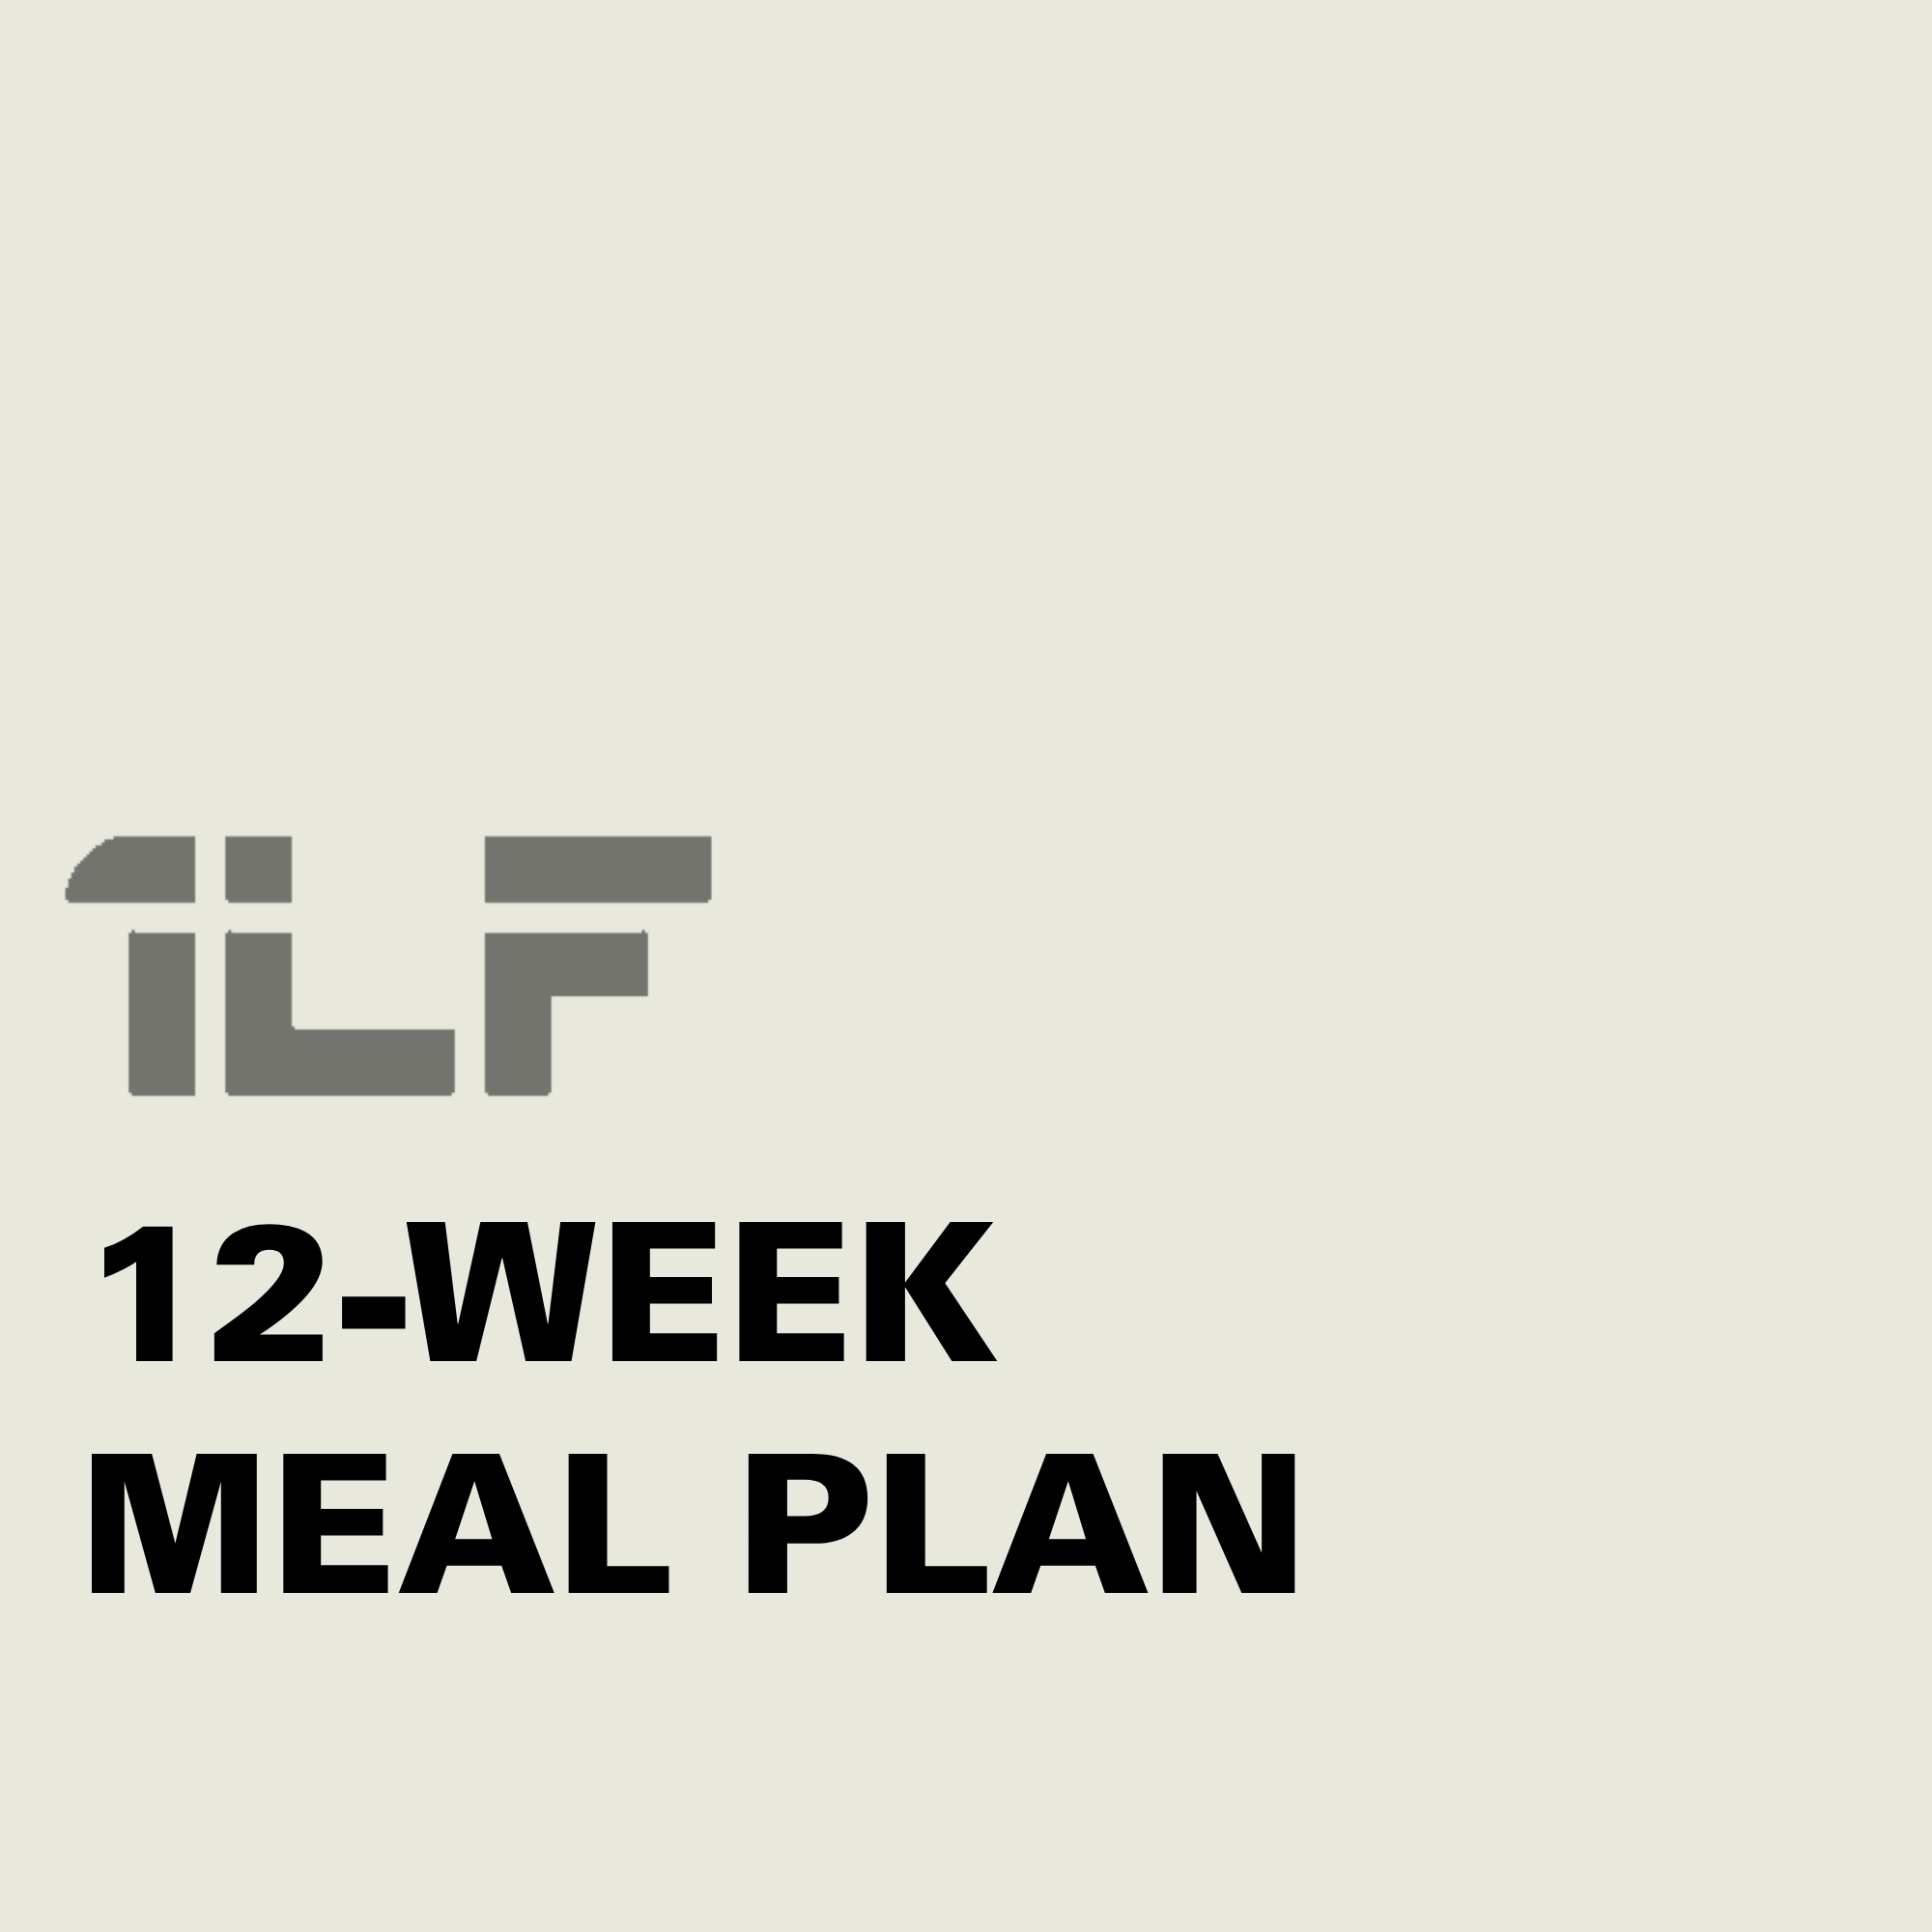 12-WEEK MEAL PLAN [NUTRITION] 🍽